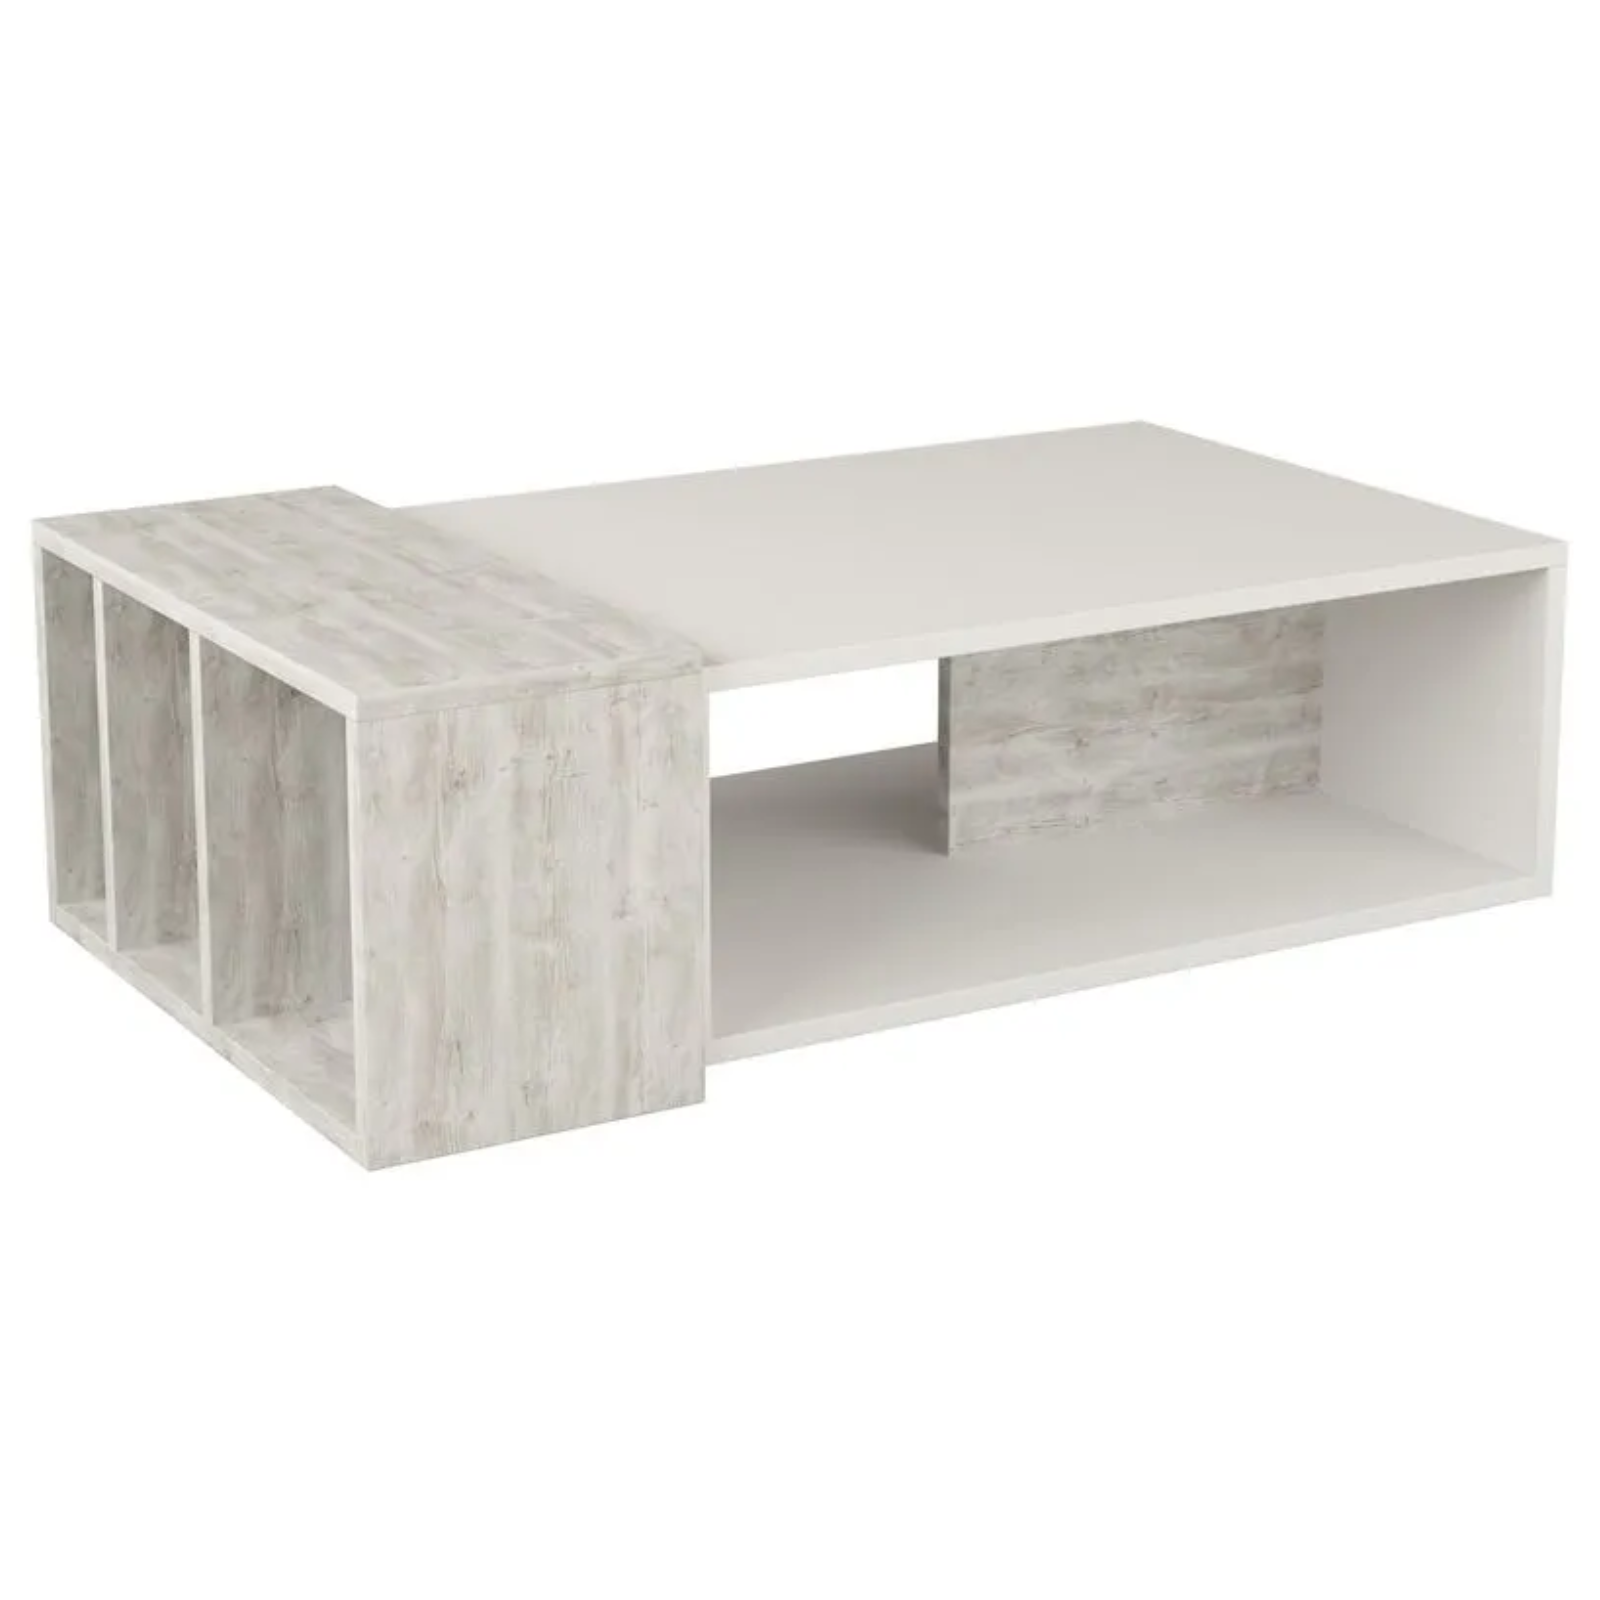 Tavolino da salotto design moderno rettangolare in legno con 4 vani a giorno bianco